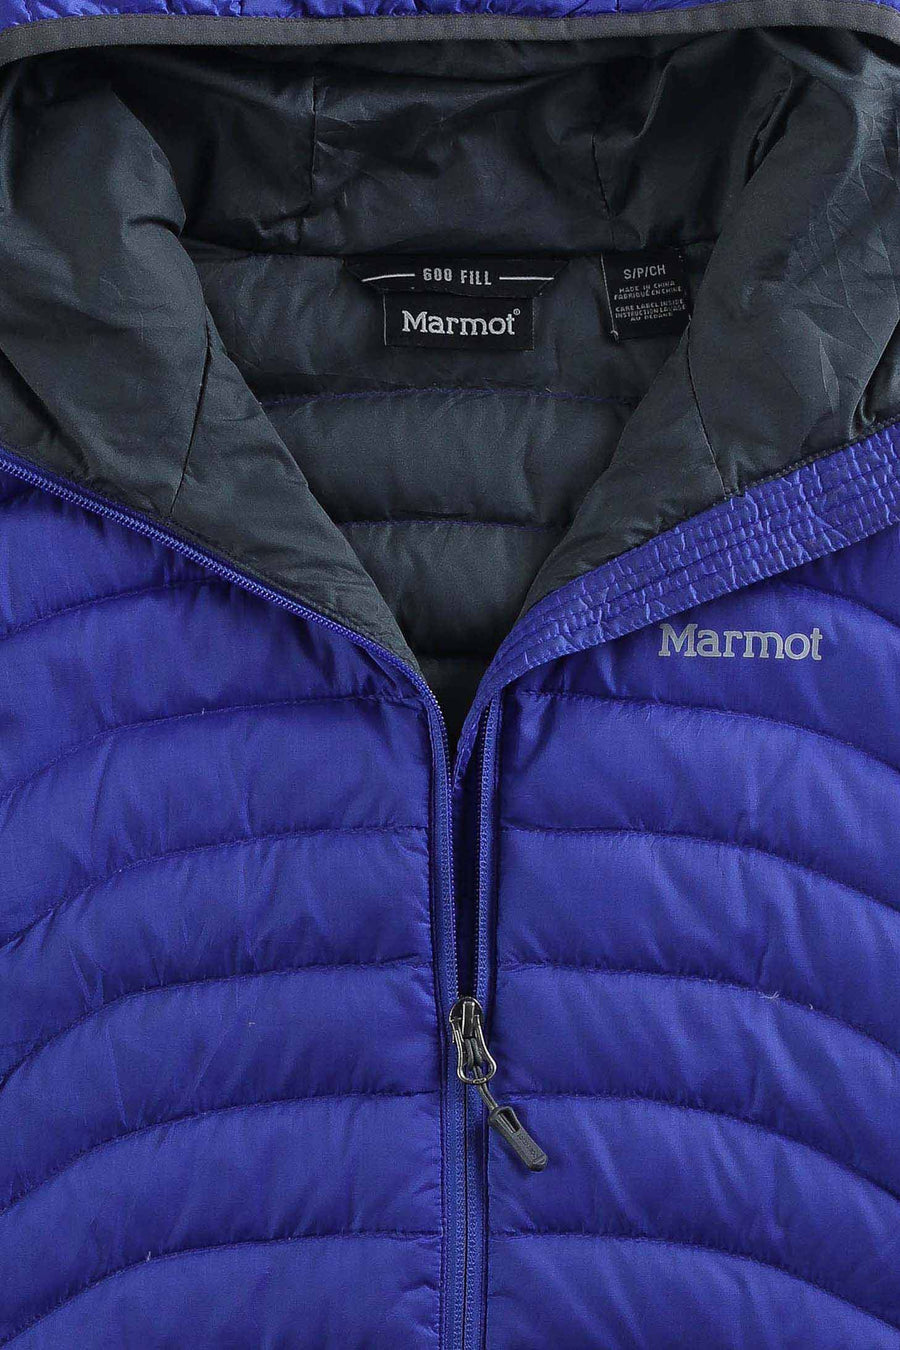 Vintage Marmot Down Jacket